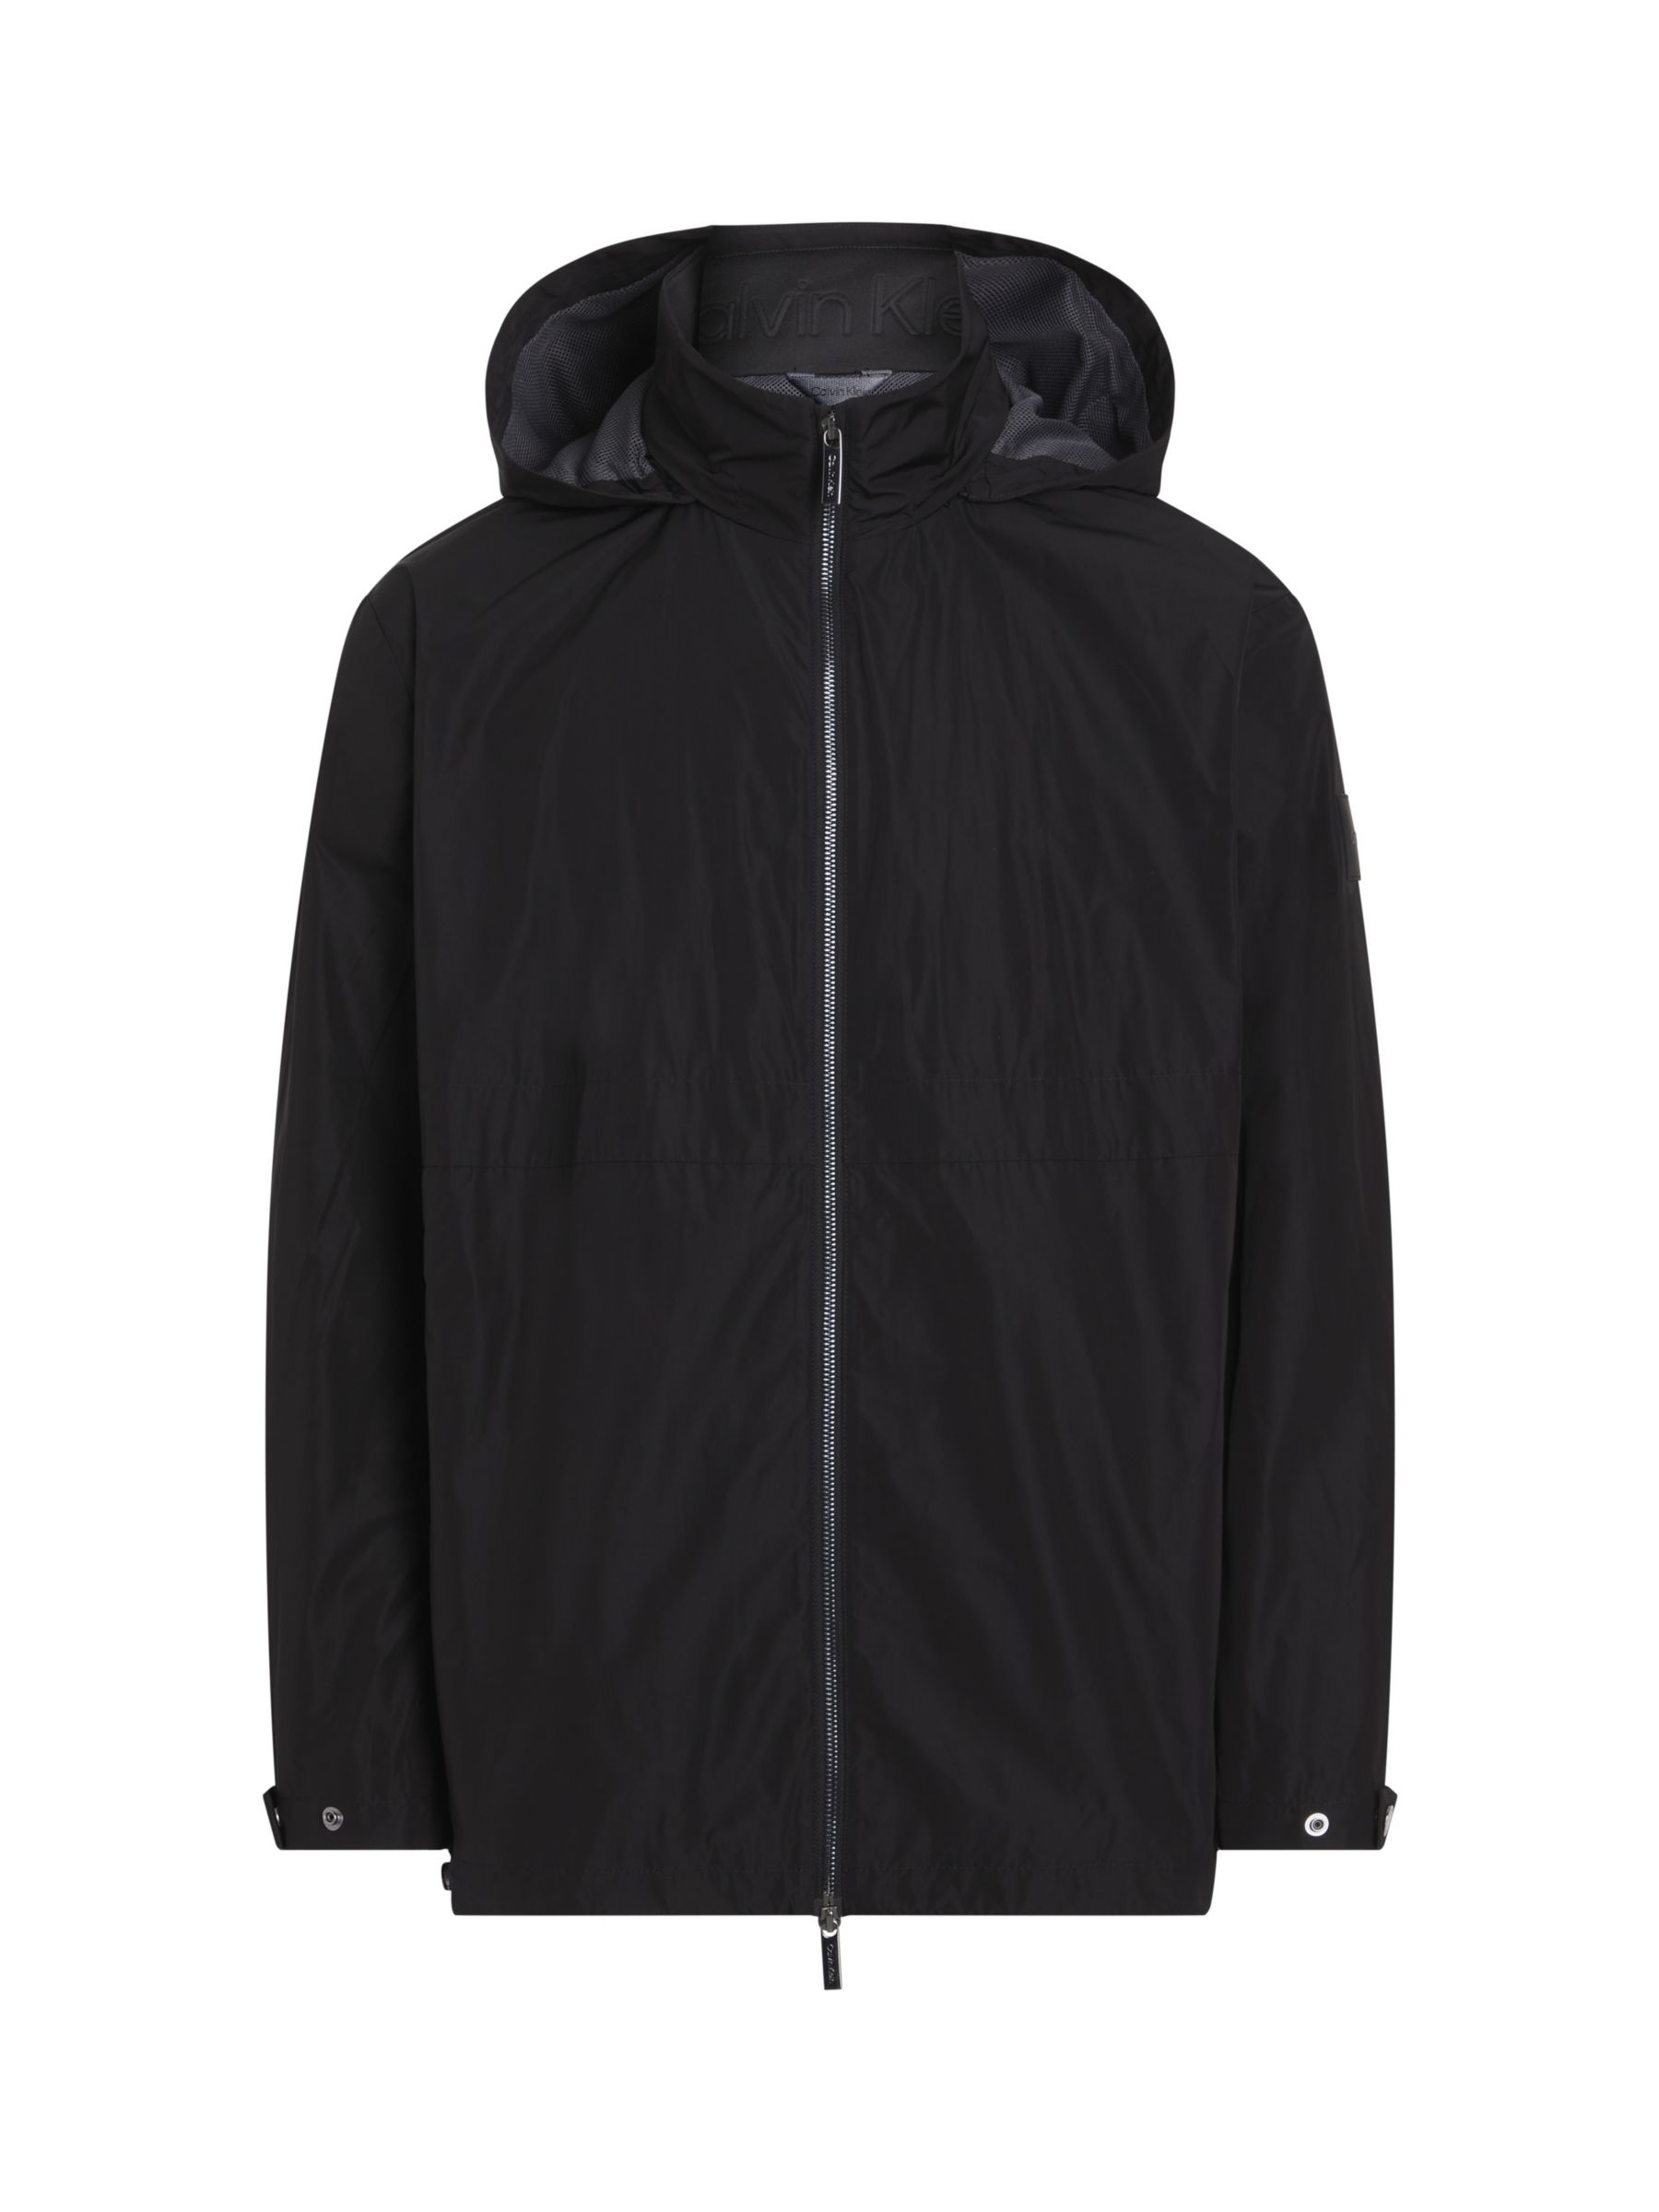 Calvin Klein Modern Hooded Windbreaker Jacket, Ck Black, L